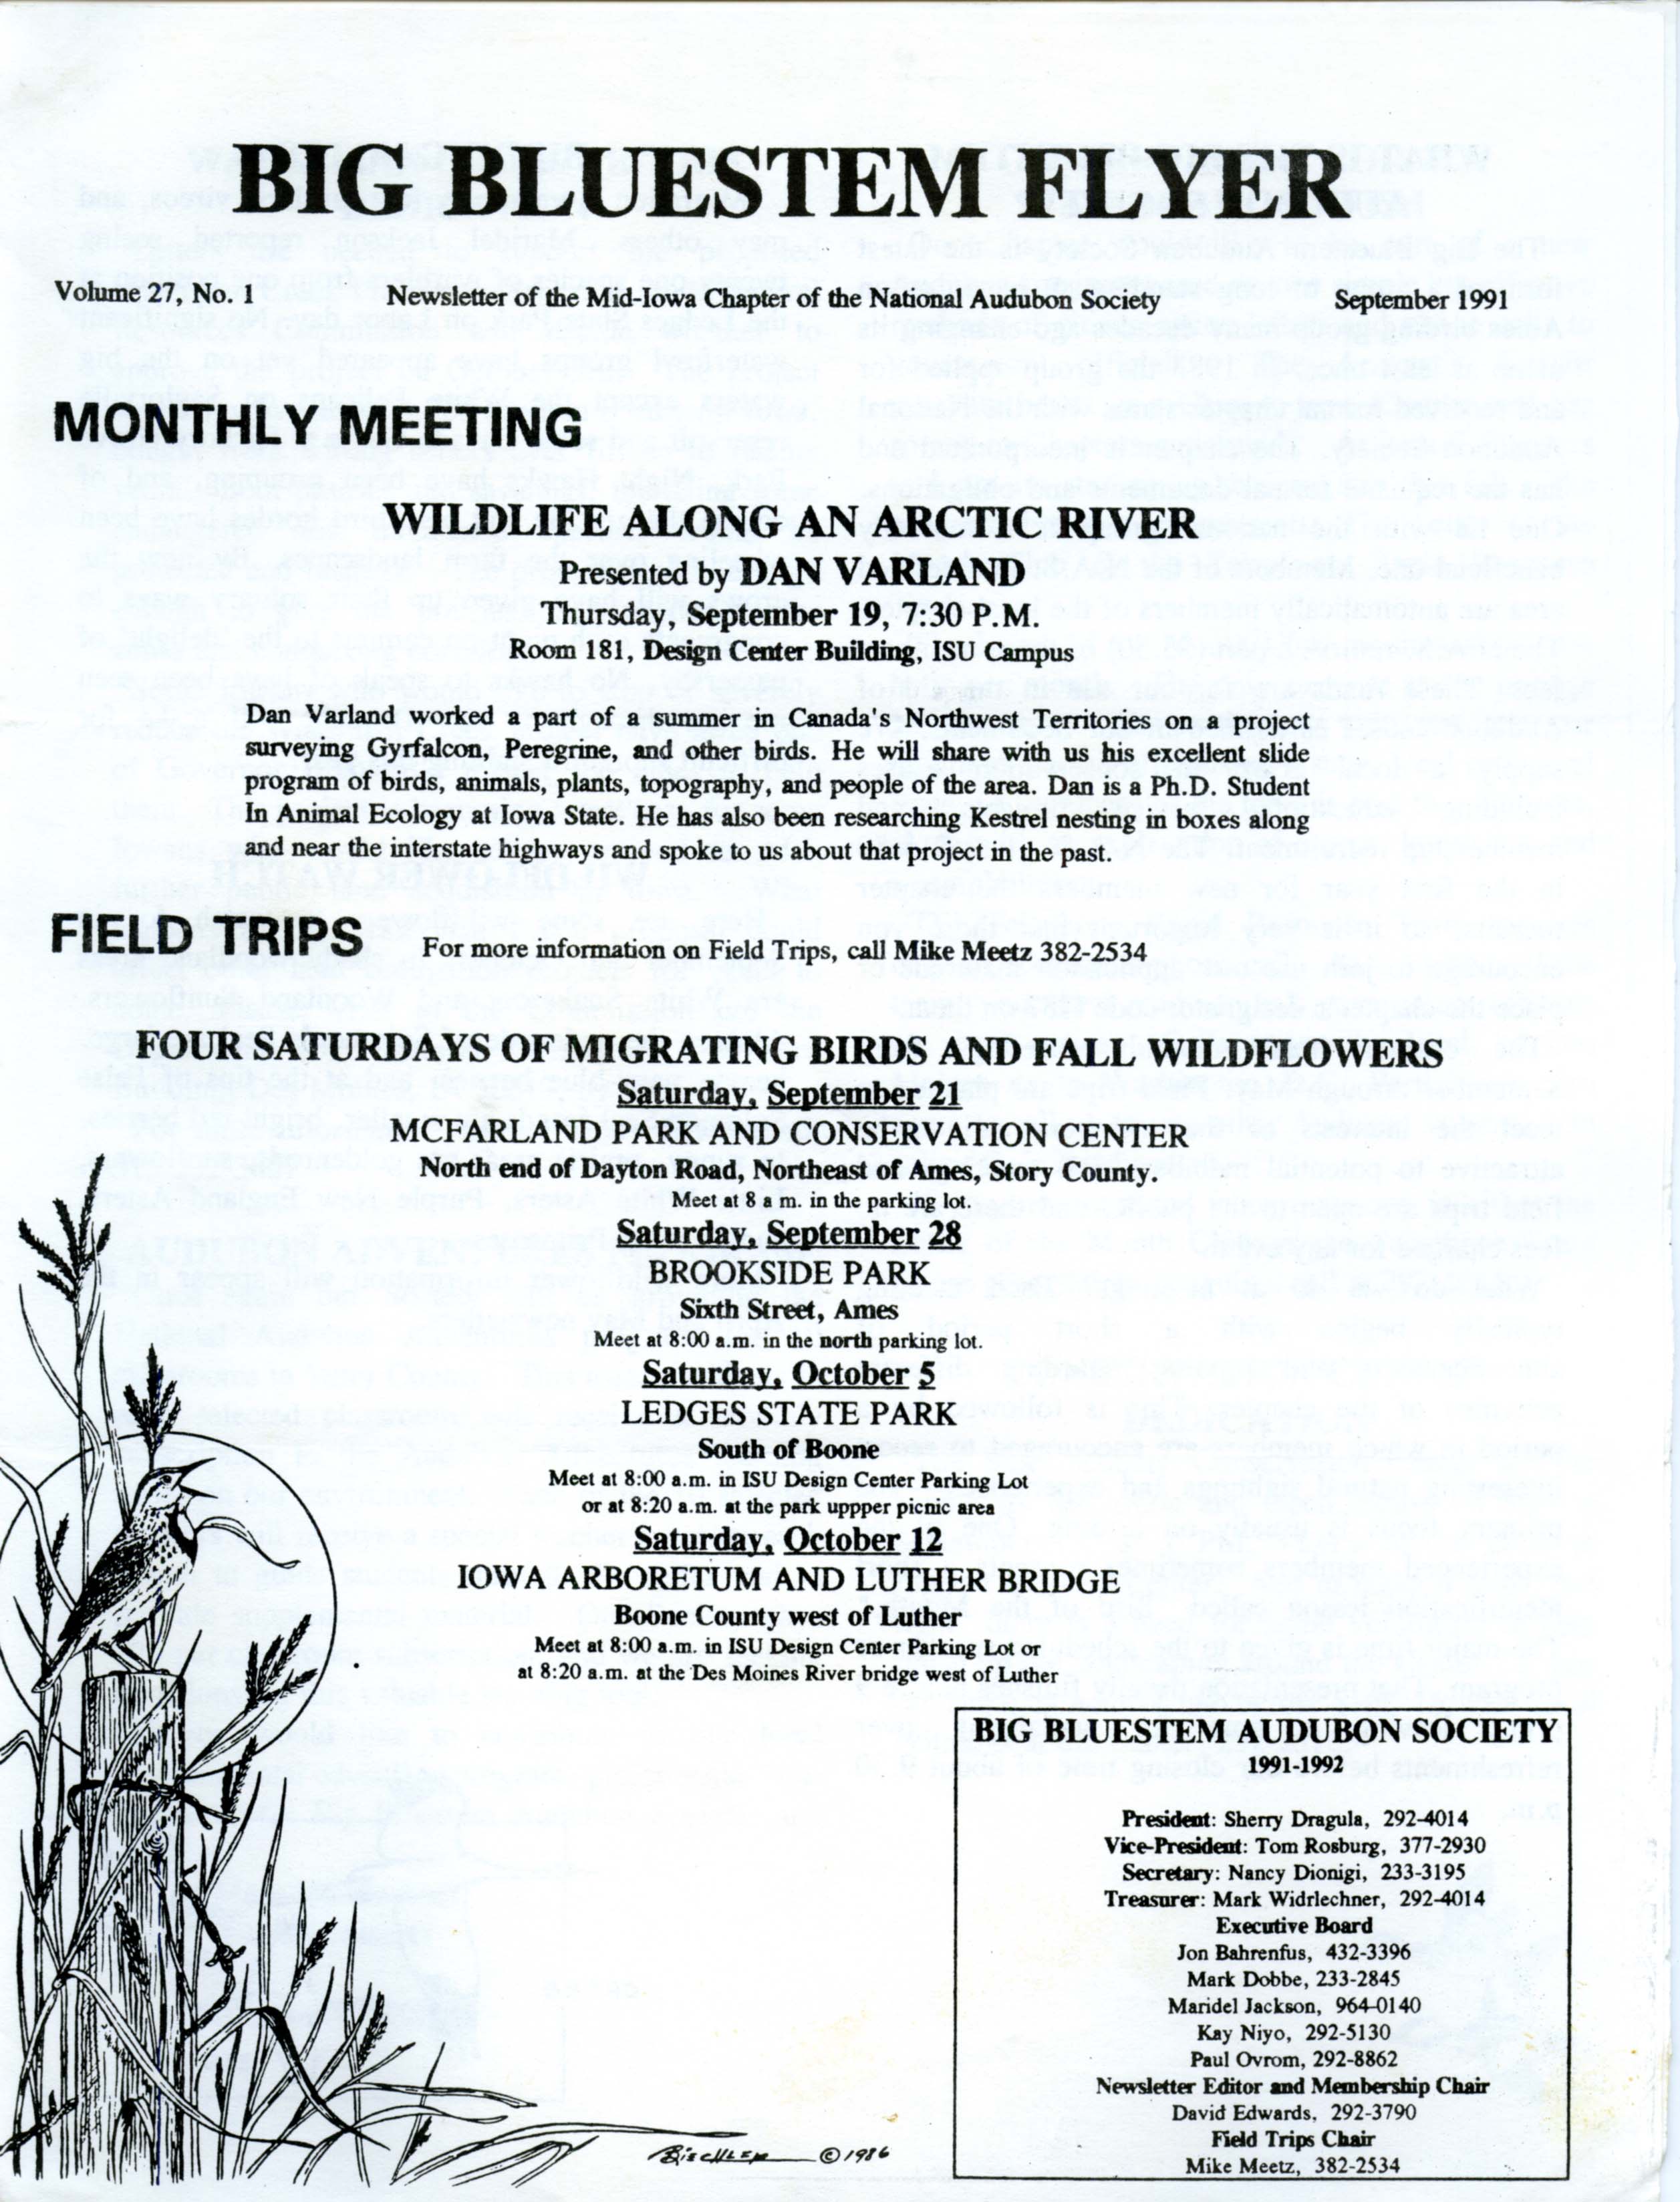 Big Bluestem Flyer, Volume 27, Number 1, September 1991